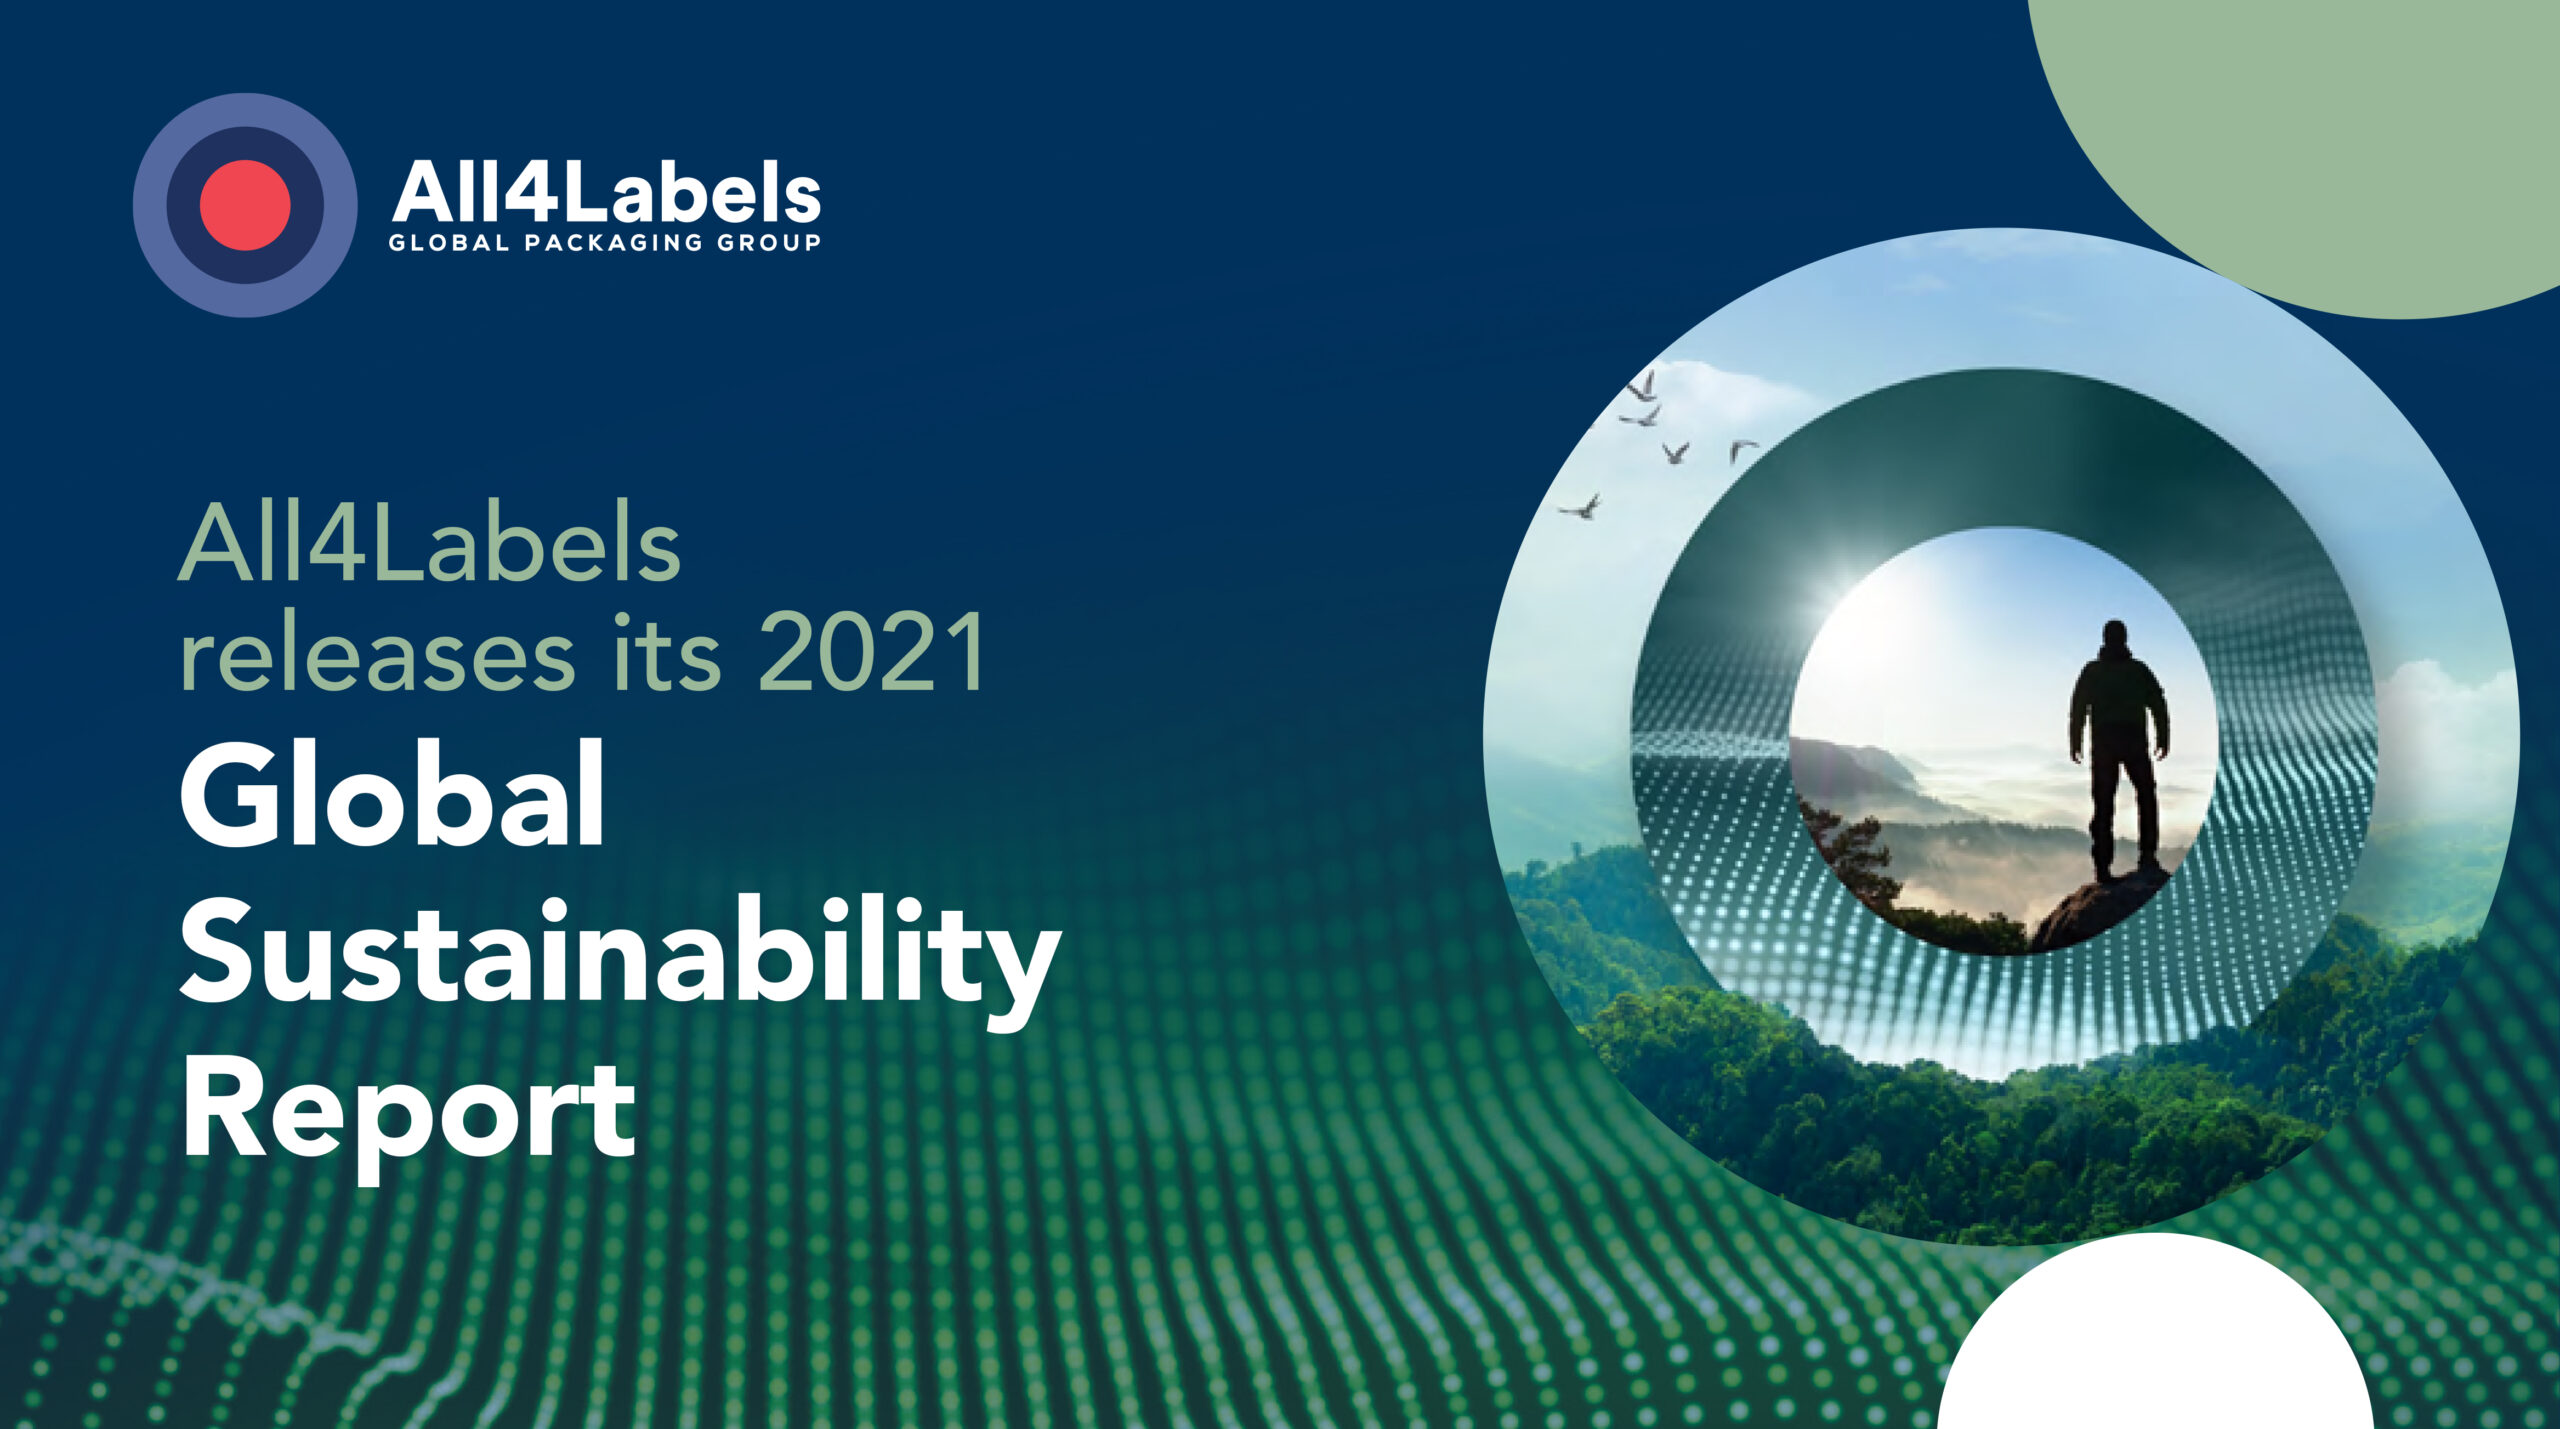 All4Labels veröffentlicht den ersten globalen Nachhaltigkeitsbericht, um seinen Beitrag zum Umweltschutz in der Verpackungsindustrie zu kommunizieren